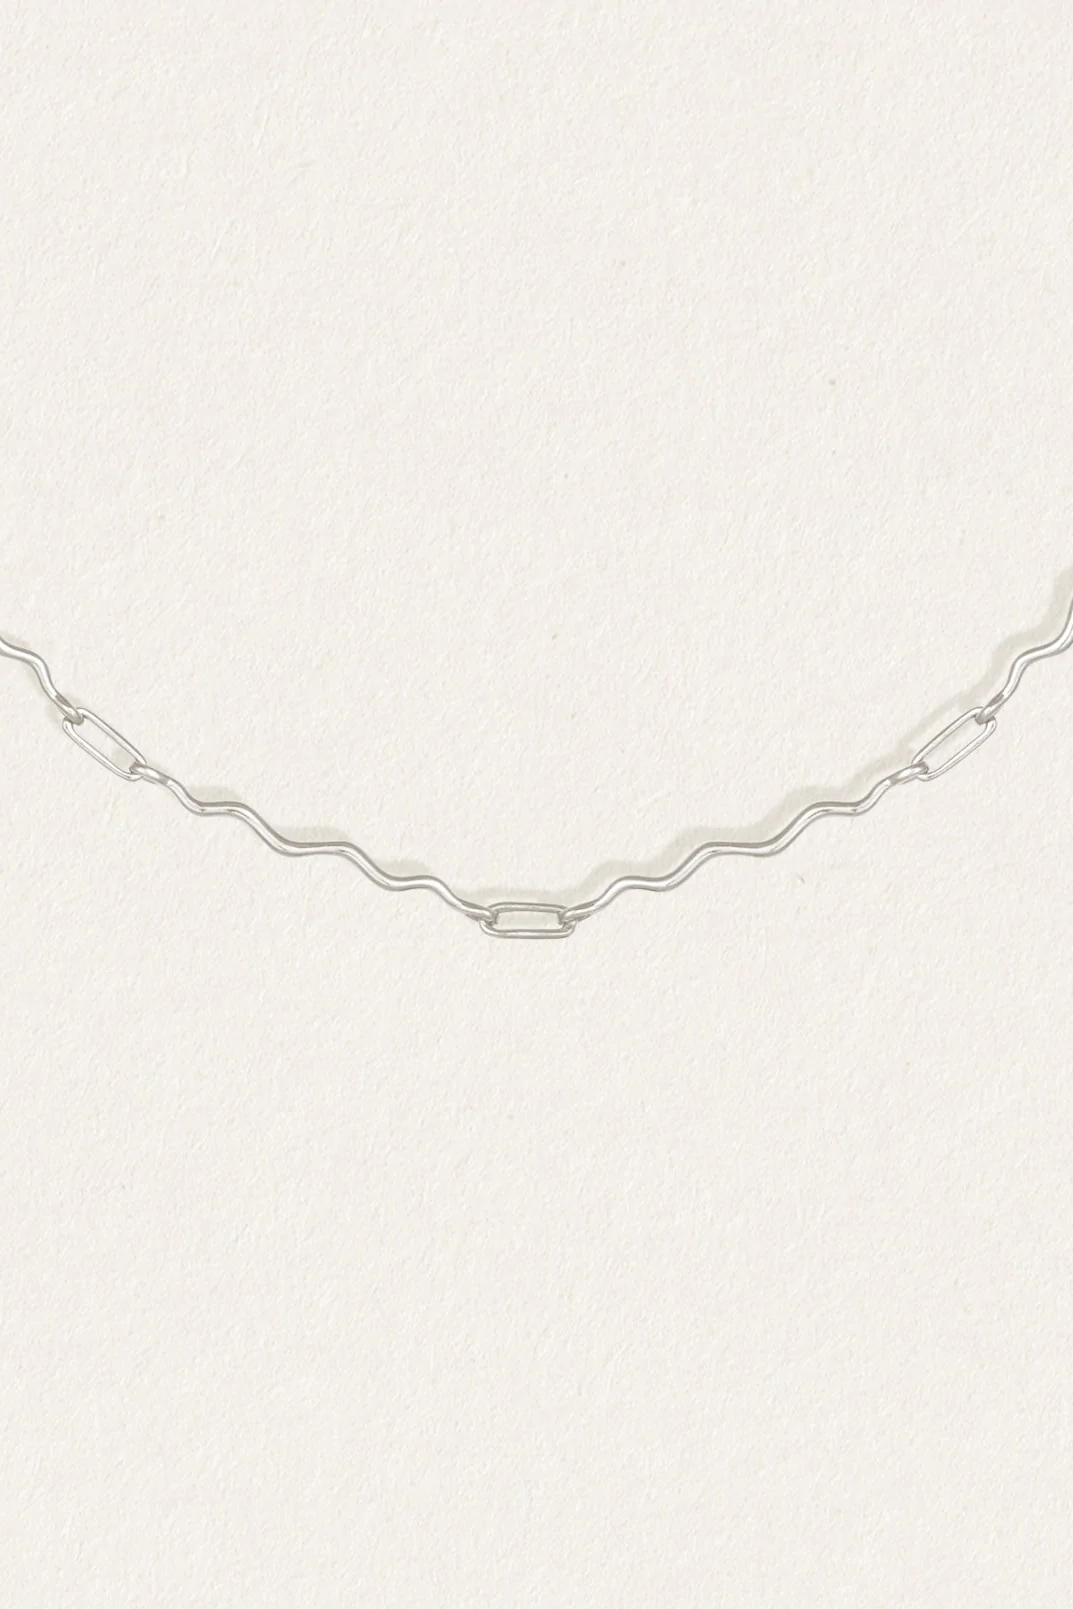 Iteru Necklace - Silver